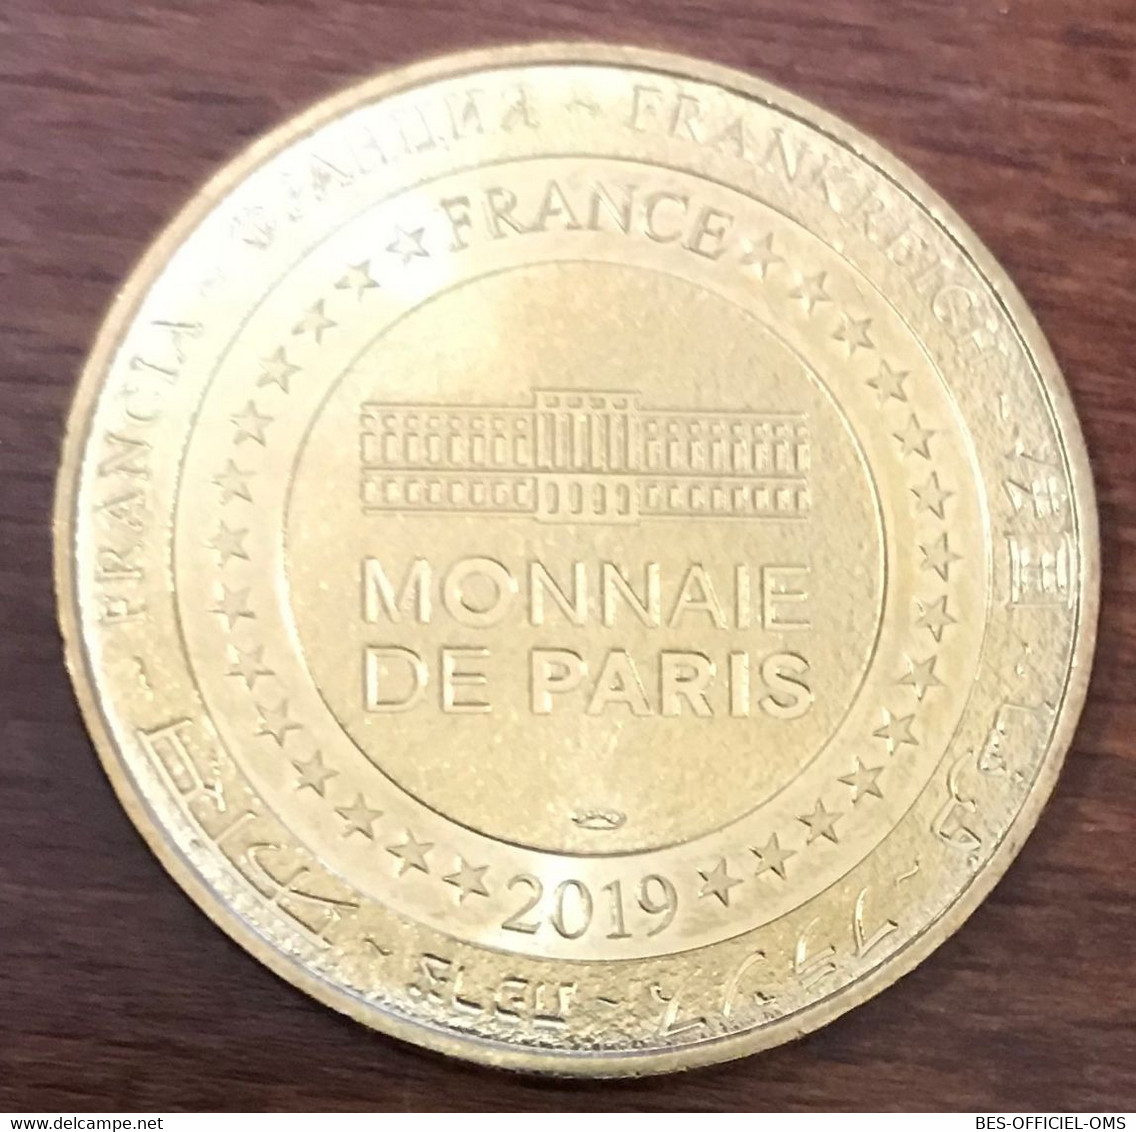 33 BORDEAUX CITÉ DU VIN MDP 2019 MÉDAILLE SOUVENIR MONNAIE DE PARIS JETON TOURISTIQUE MEDALS COINS TOKENS - 2019